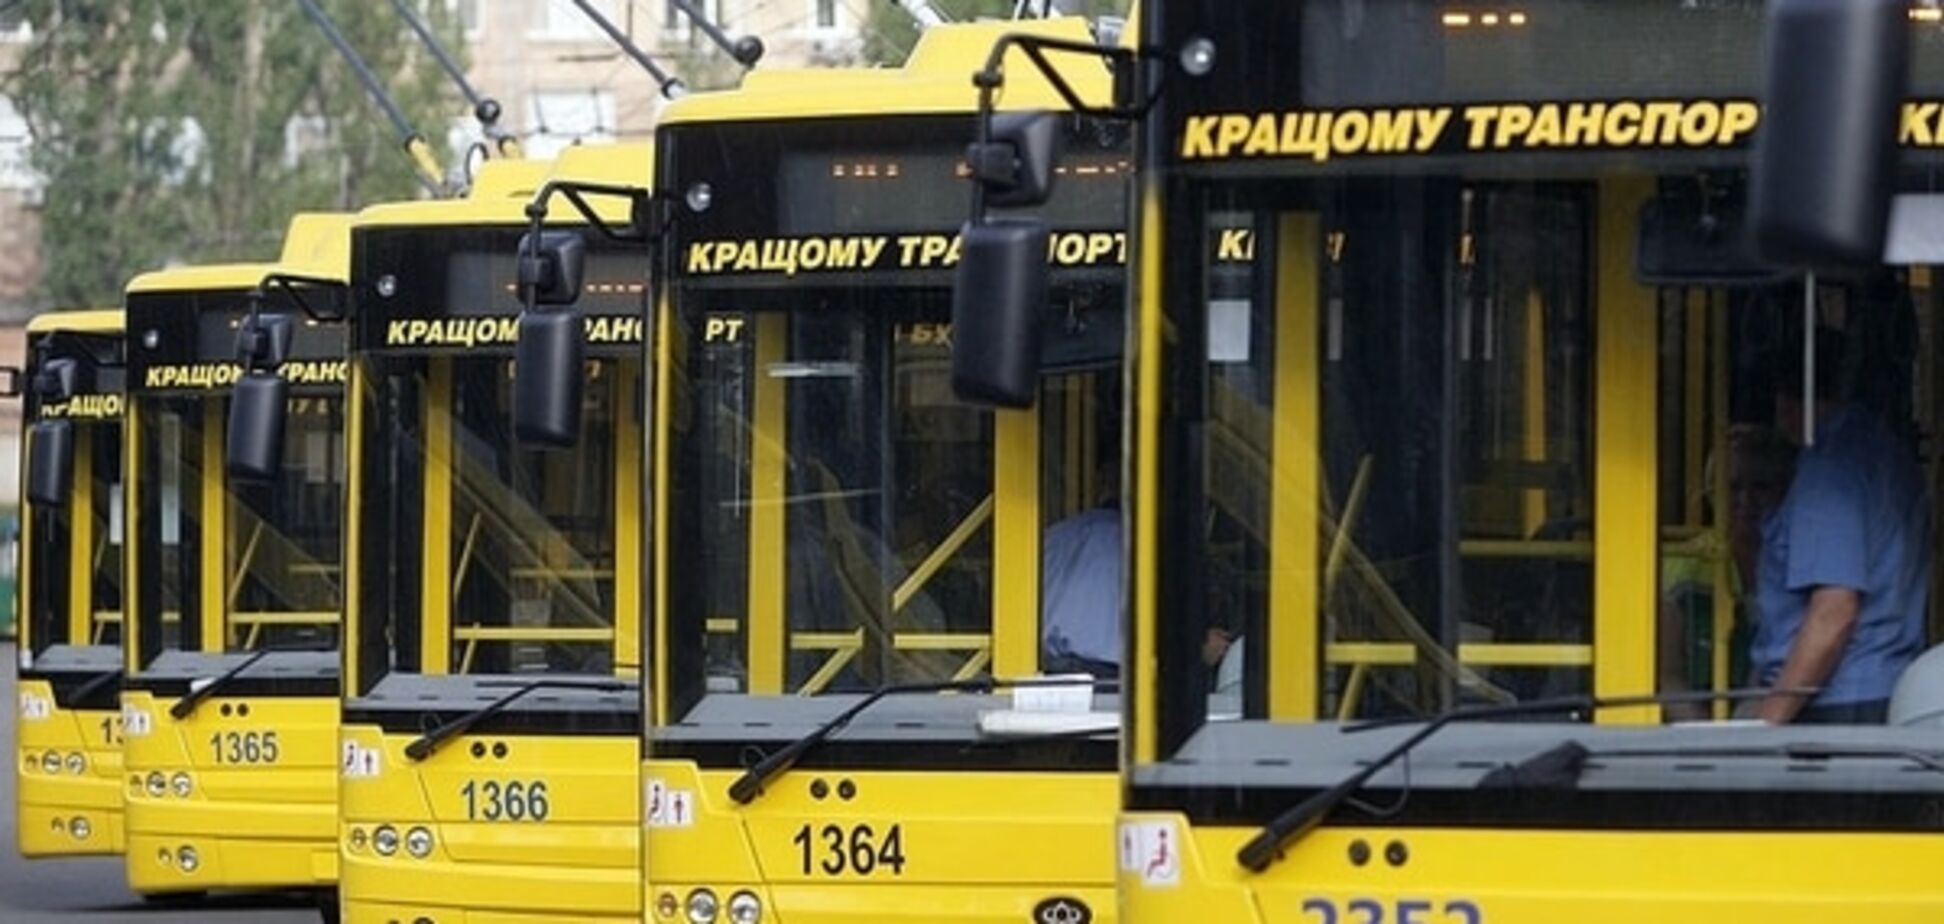 В Киеве открыт новый троллейбусный маршрут: схема движения